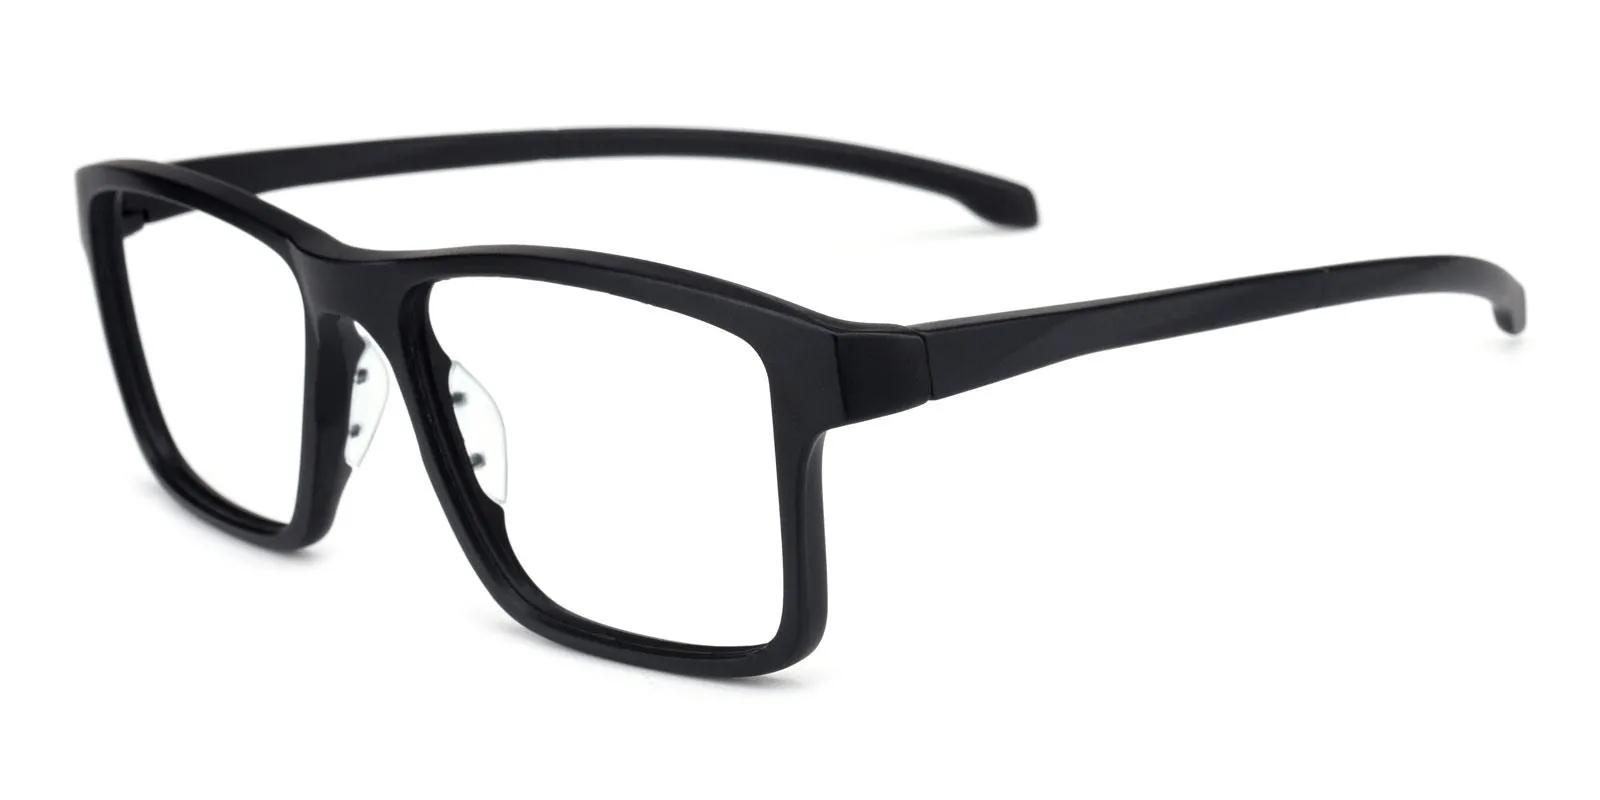 Menery Clip-On Black TR Eyeglasses , UniversalBridgeFit , Clip-on Frames from ABBE Glasses